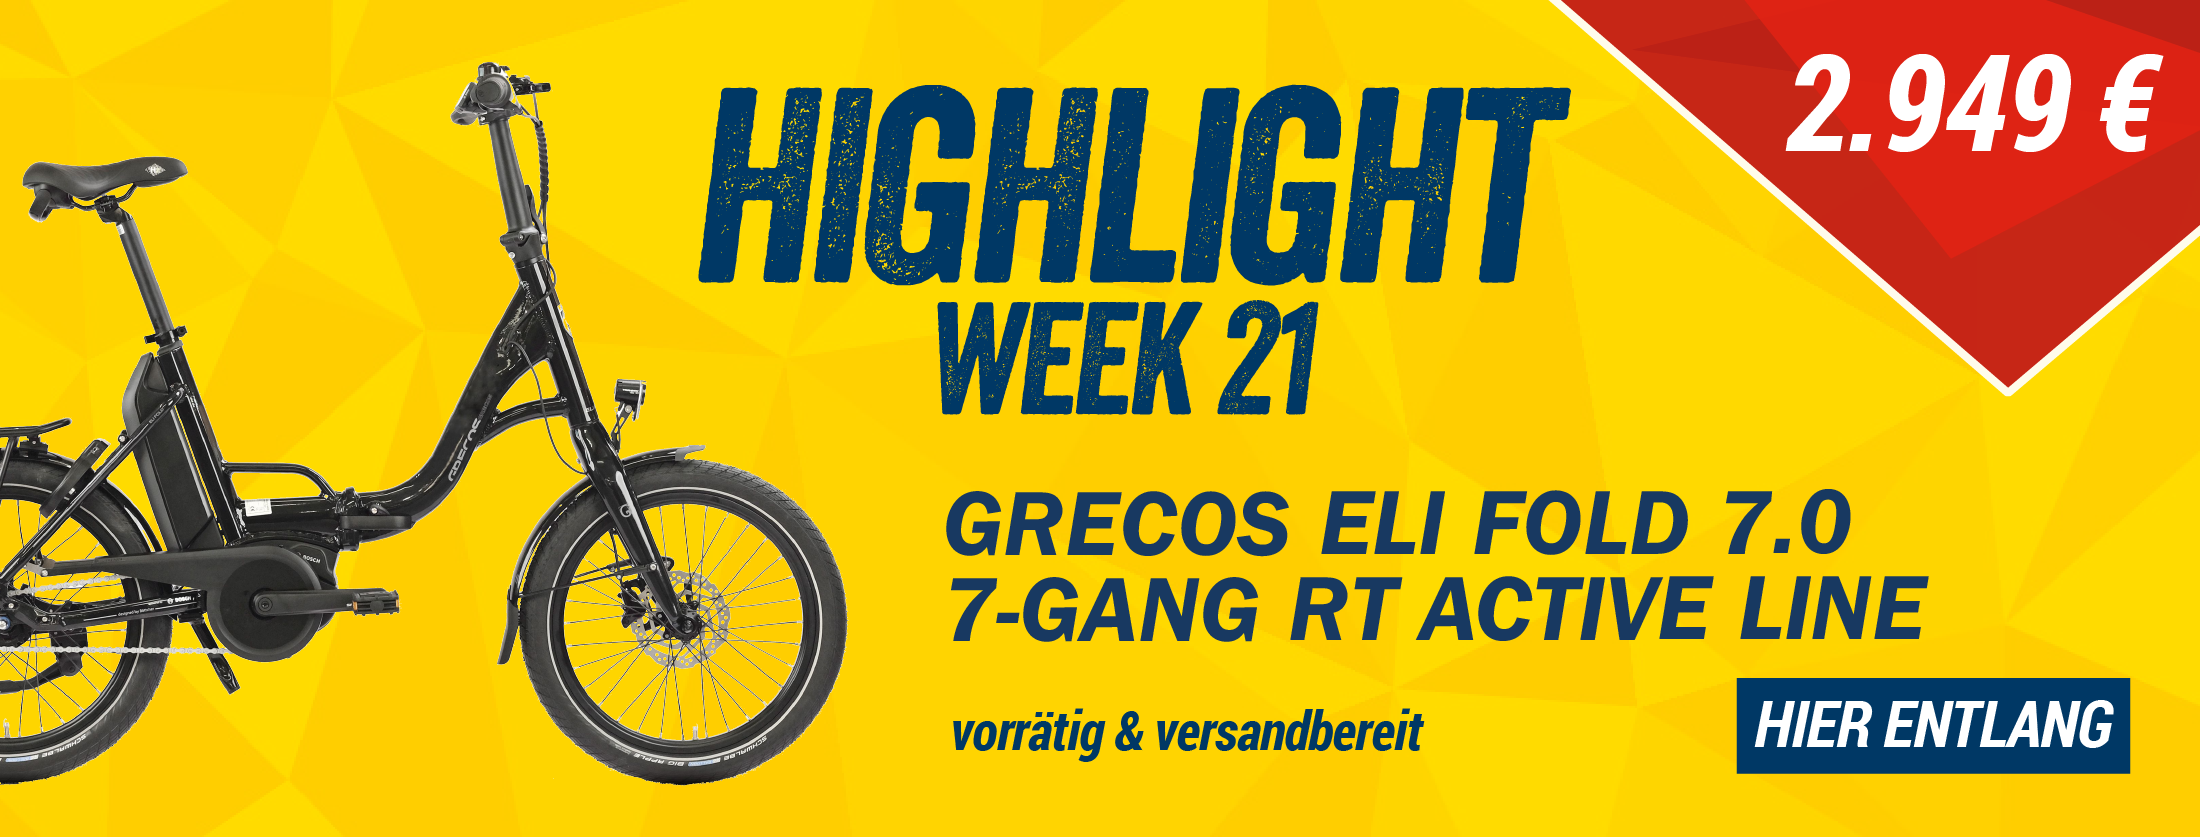 Highlight der Woche Grecos Eli Fold 7